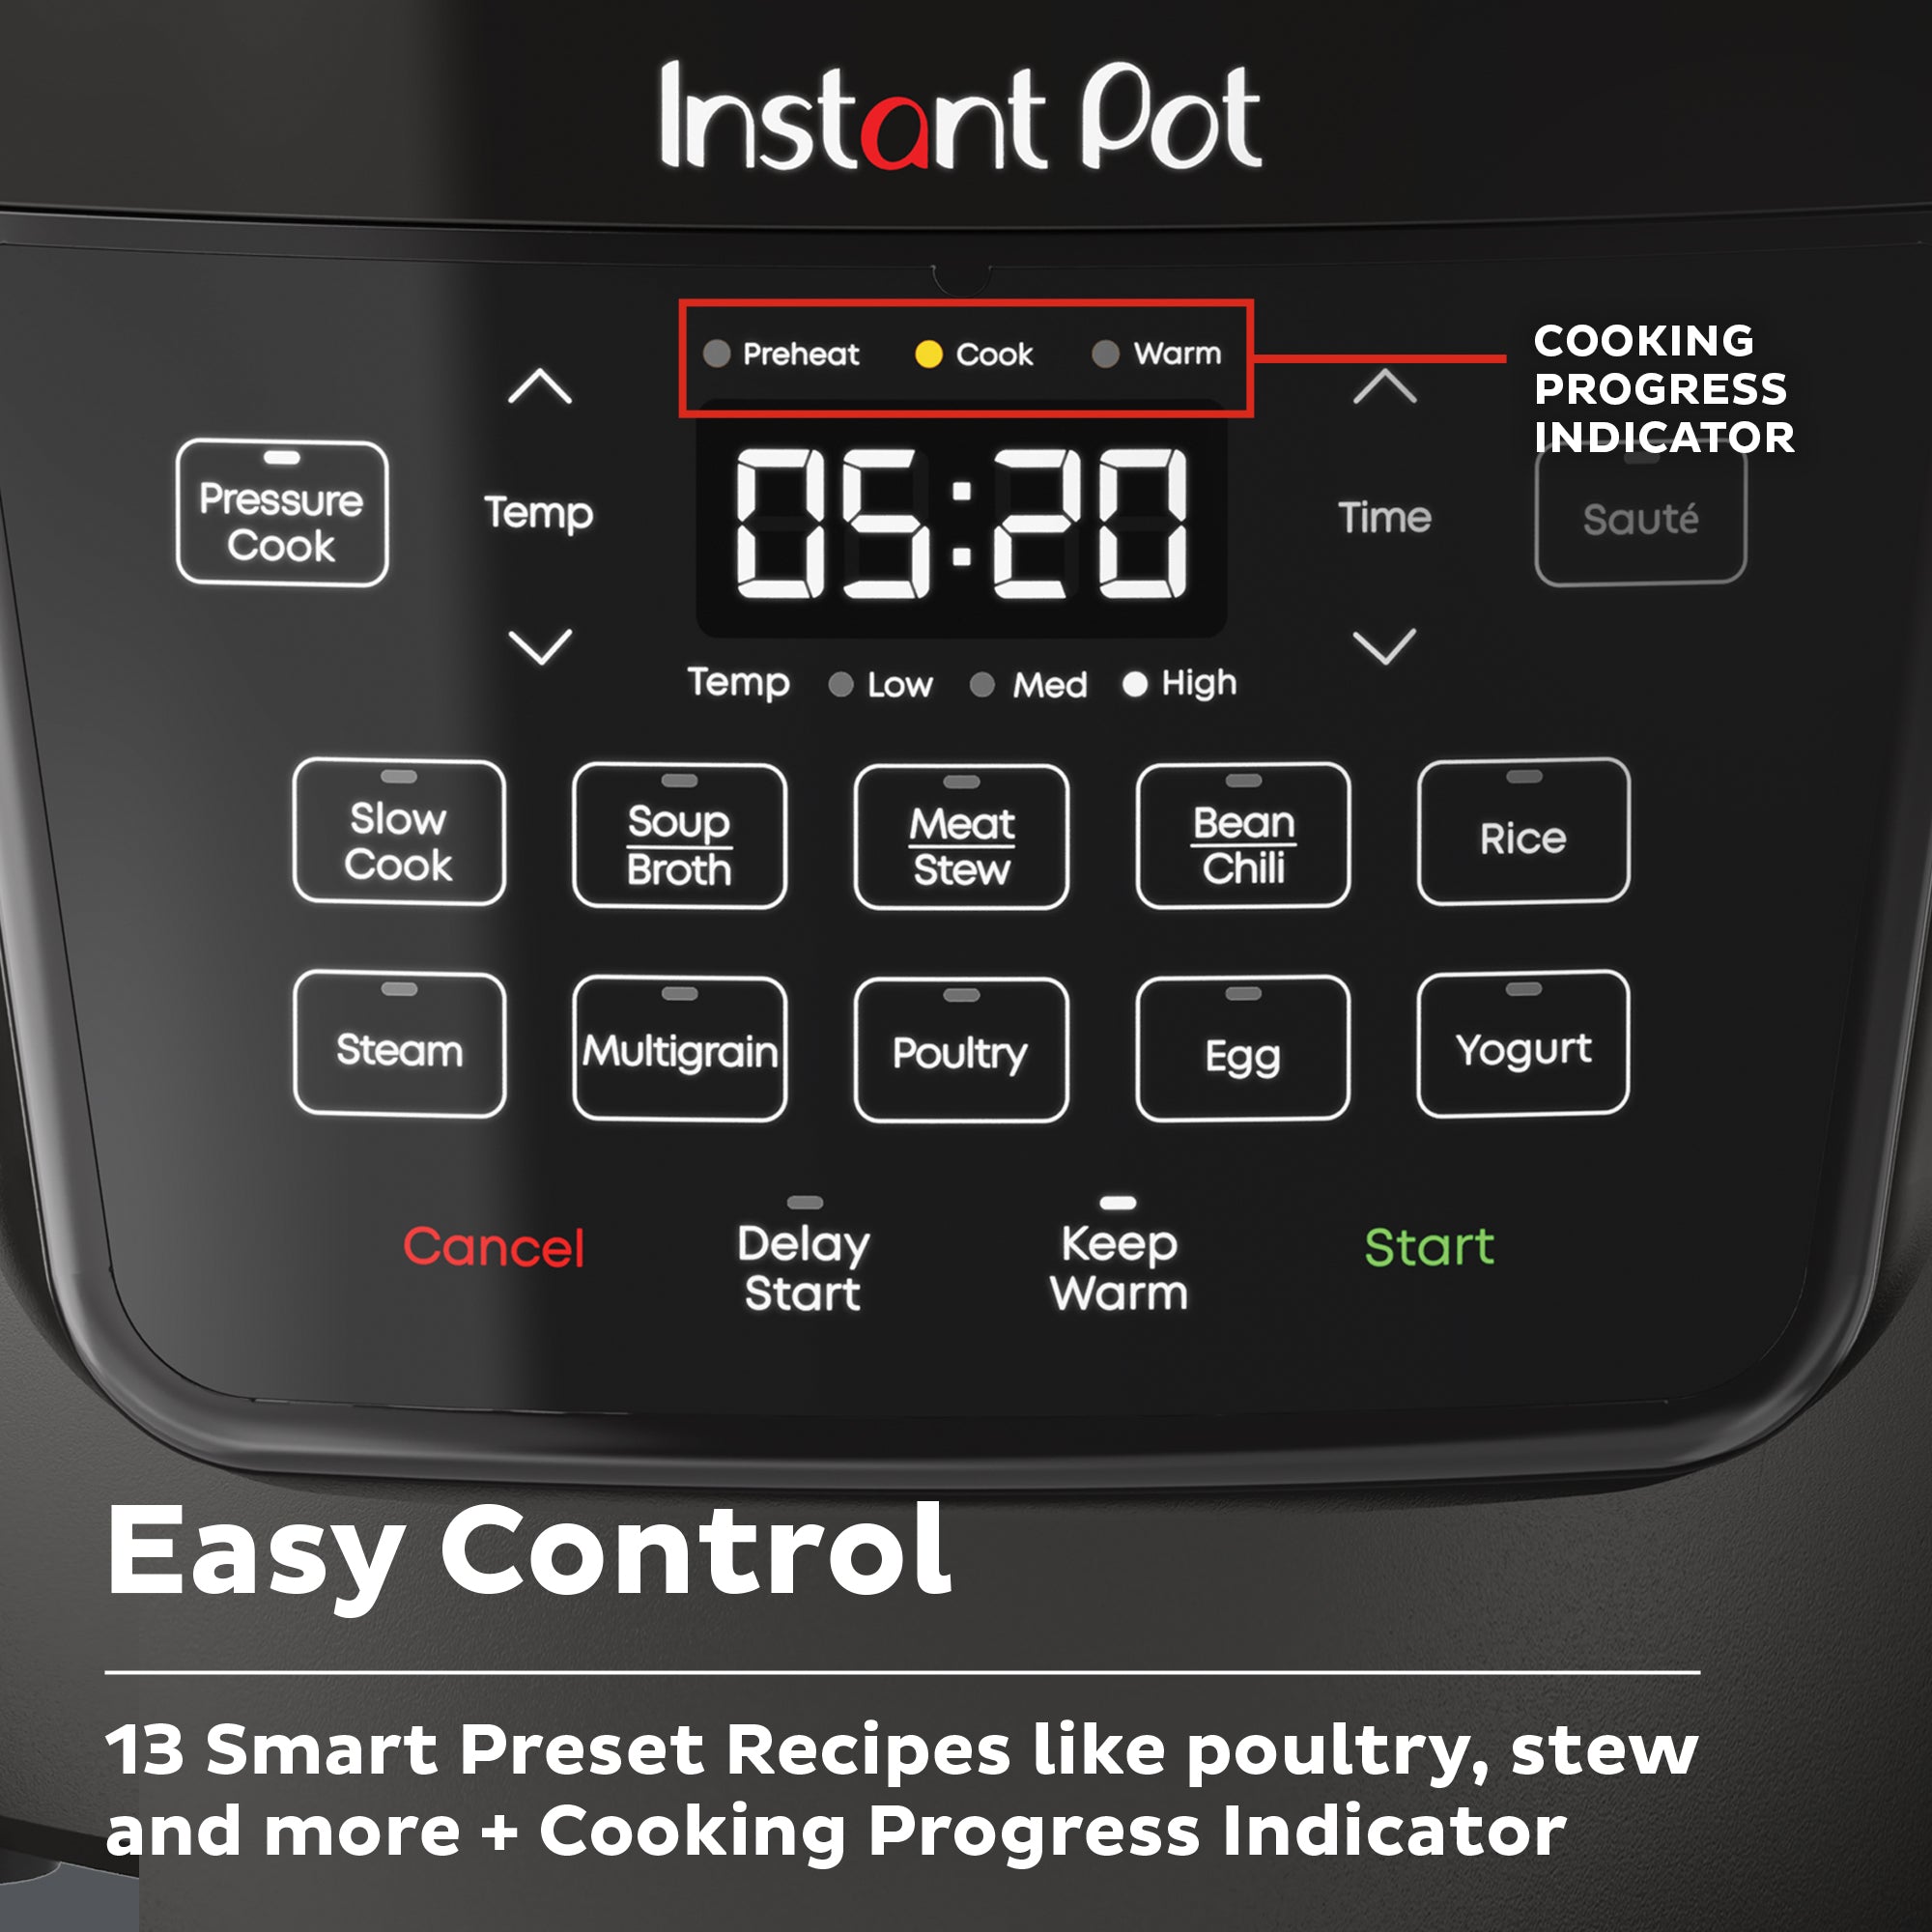 Instant Pot® Rio™ Wide Multi-Cooker 7.1L